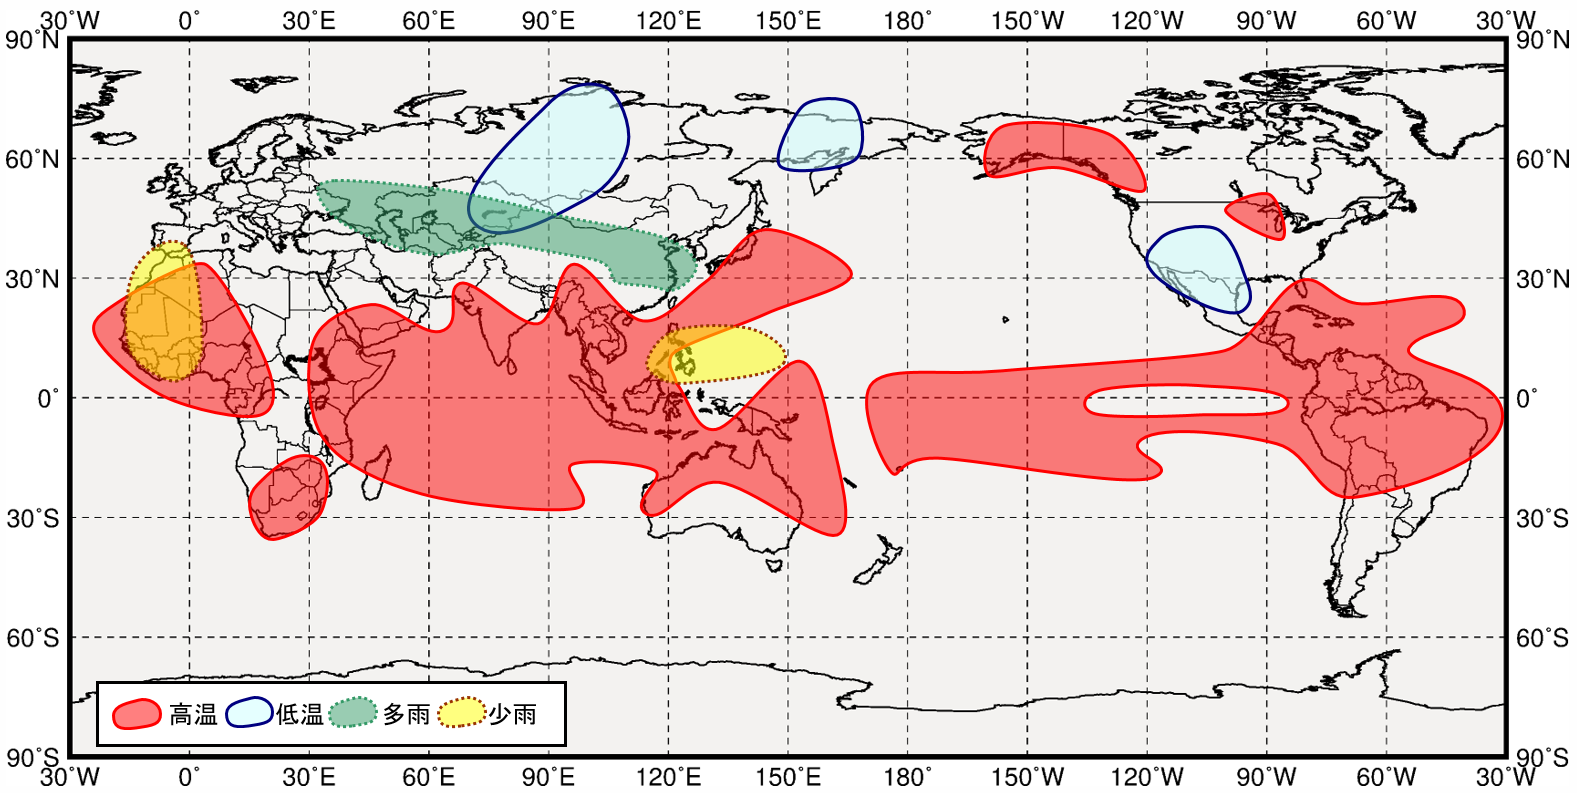 インド洋熱帯域が高温時の世界の３月から５月にかけての気温と降水量の傾向の分布図